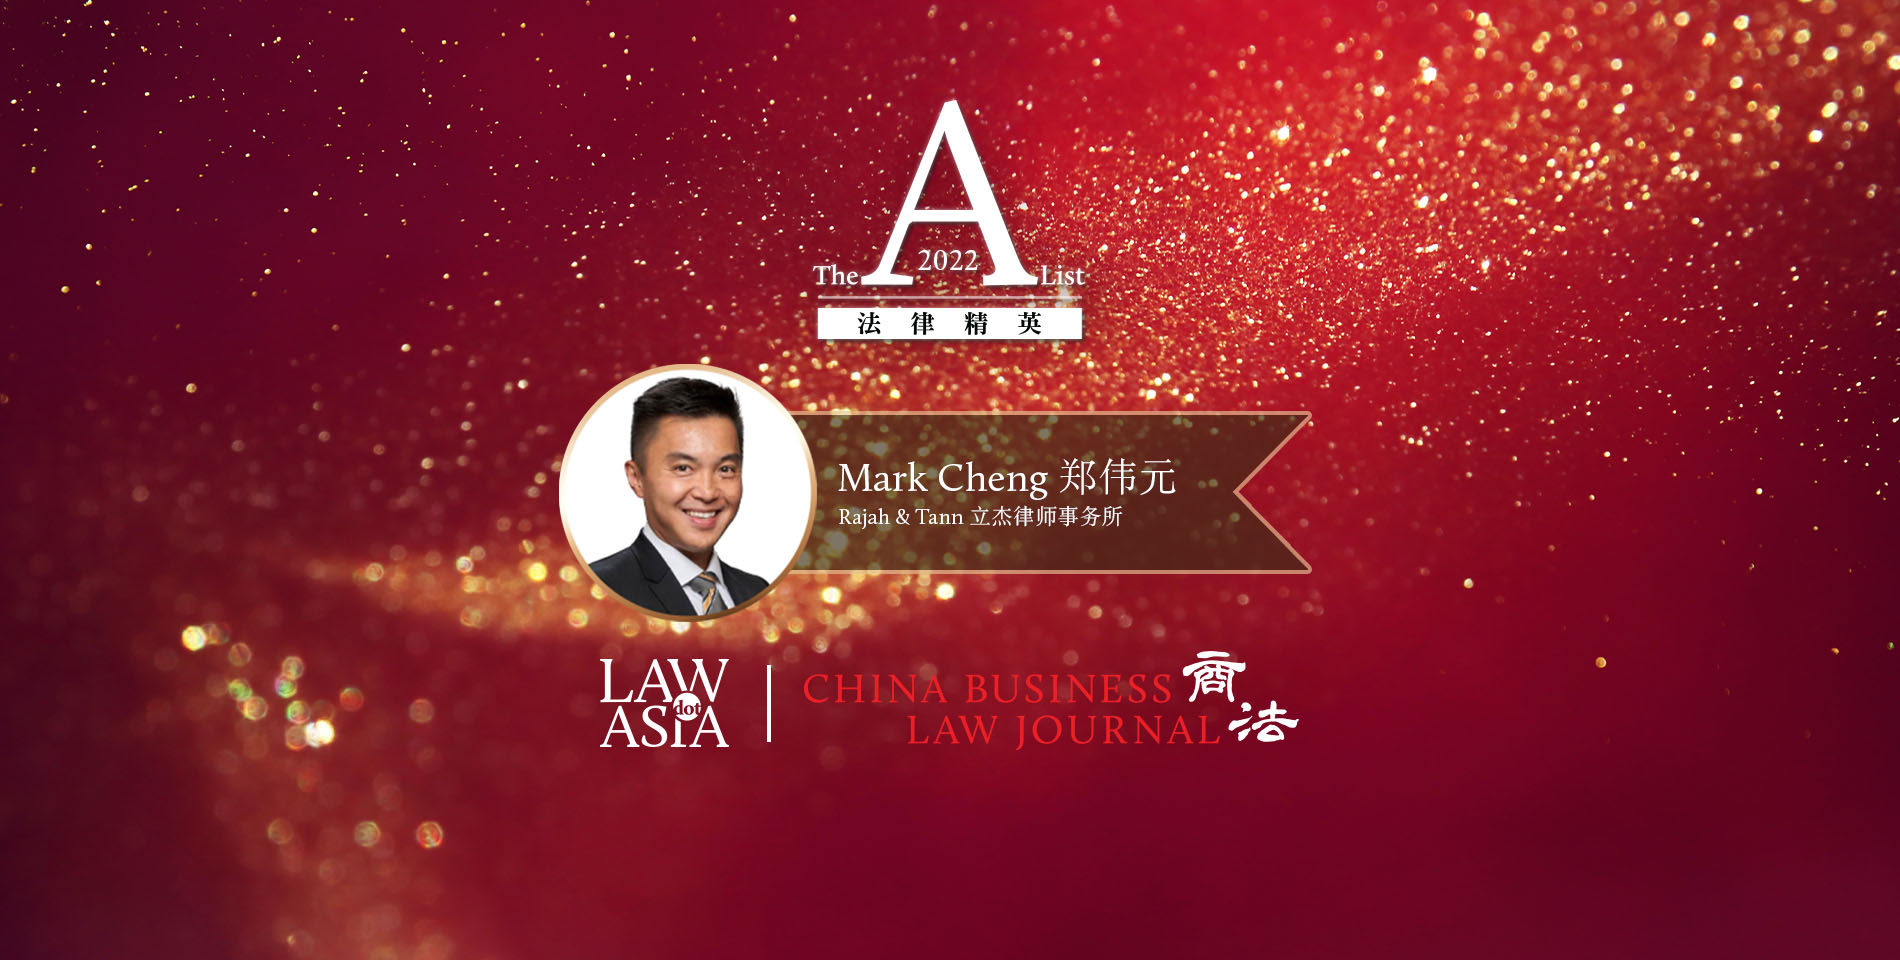 郑伟元- 立杰律师事务所- 新加坡- 《商法》2022年法律精英简介